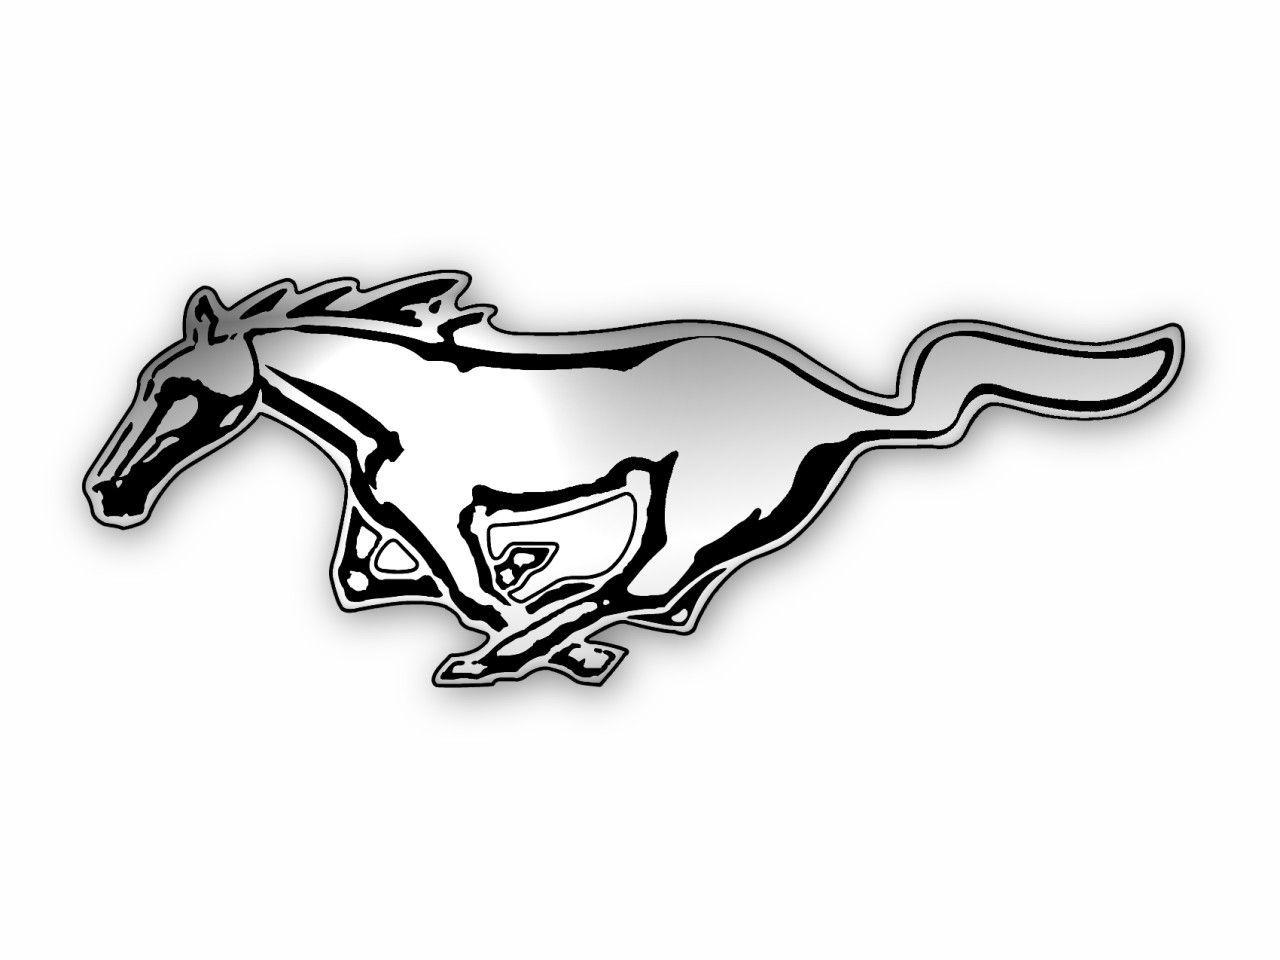 Stallion Car Logo - logo mustang. Mustangs. Mustang, Mustang cars